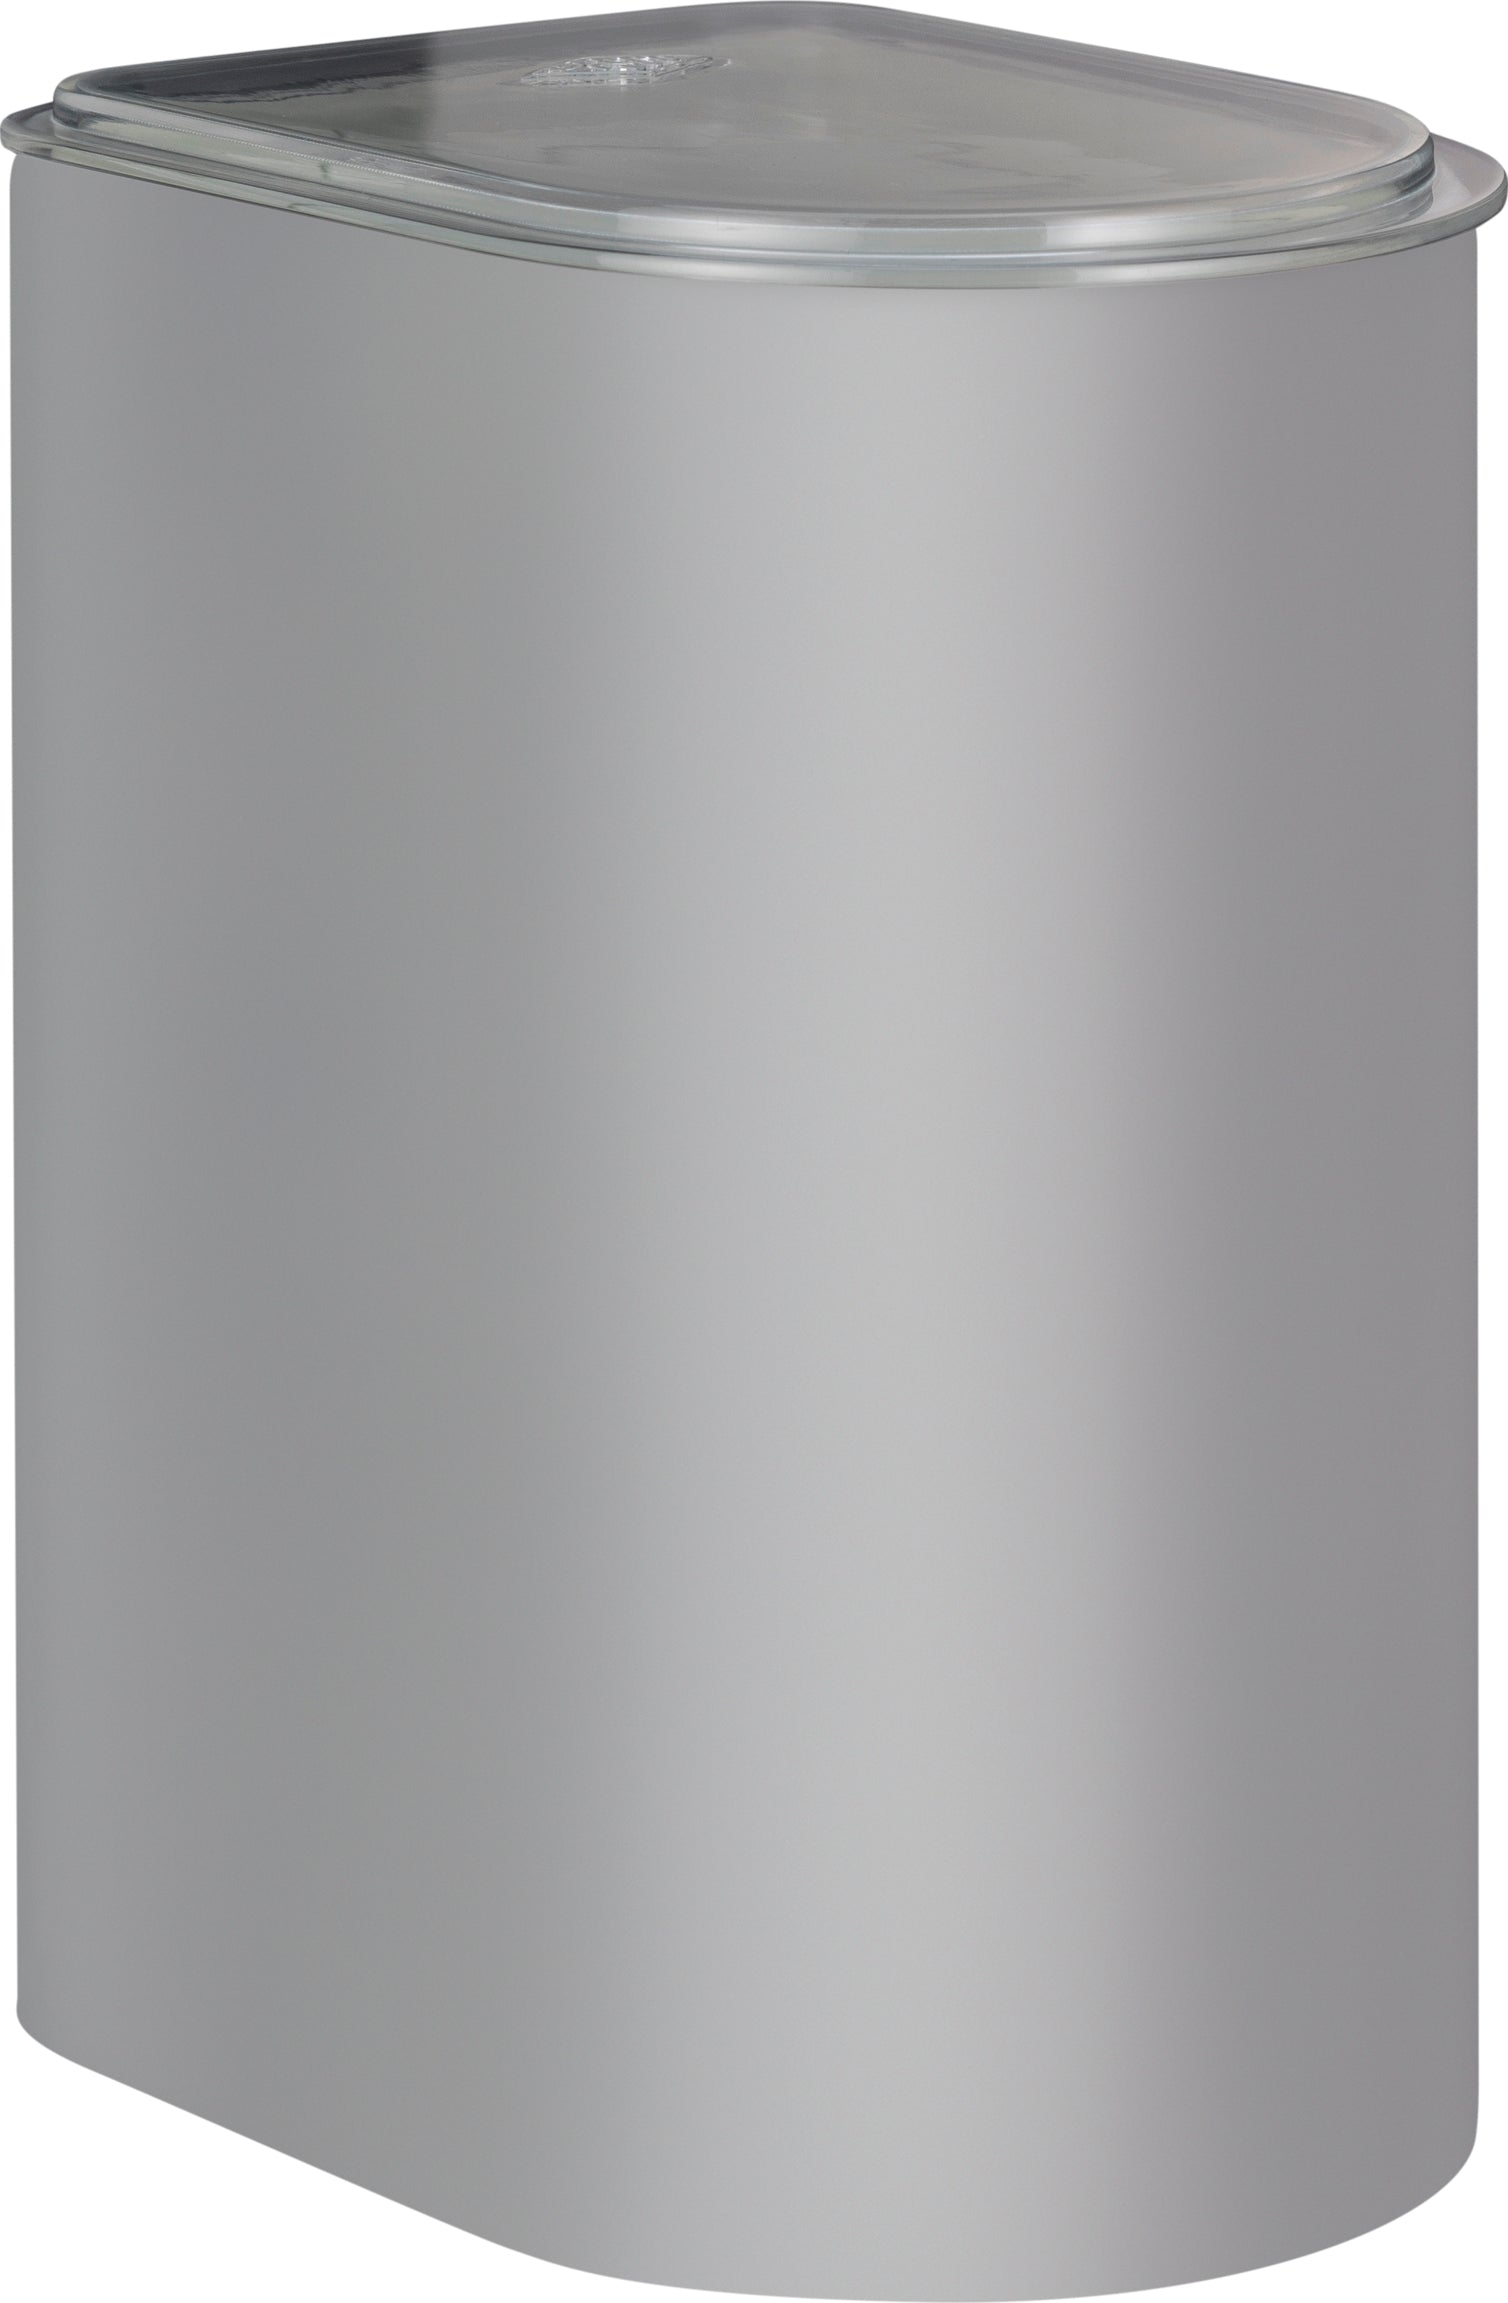 Wesco Canister de 3 litros con tapa acrílica, gris fresco Matt